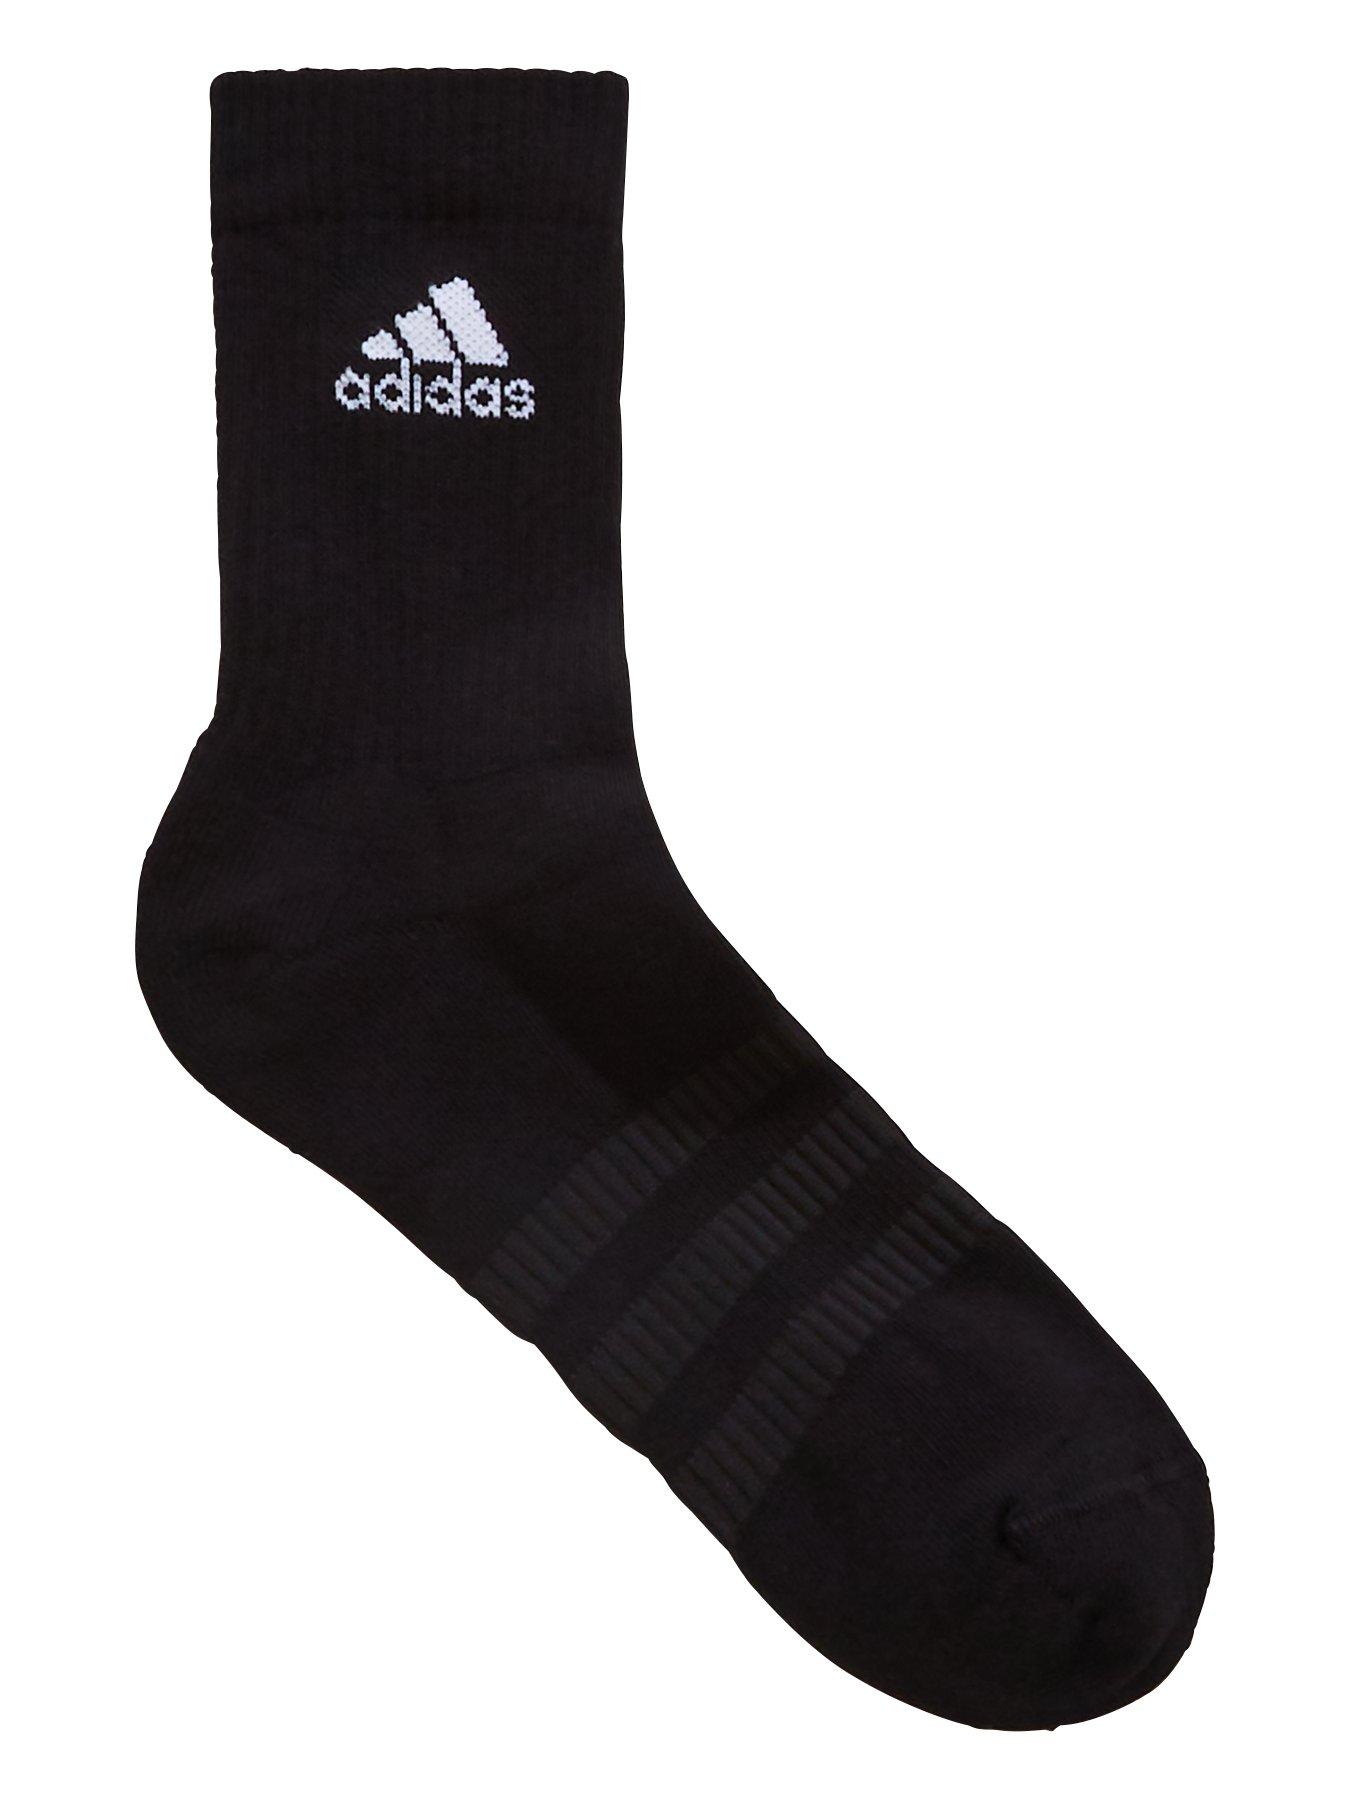 adidas socks uk